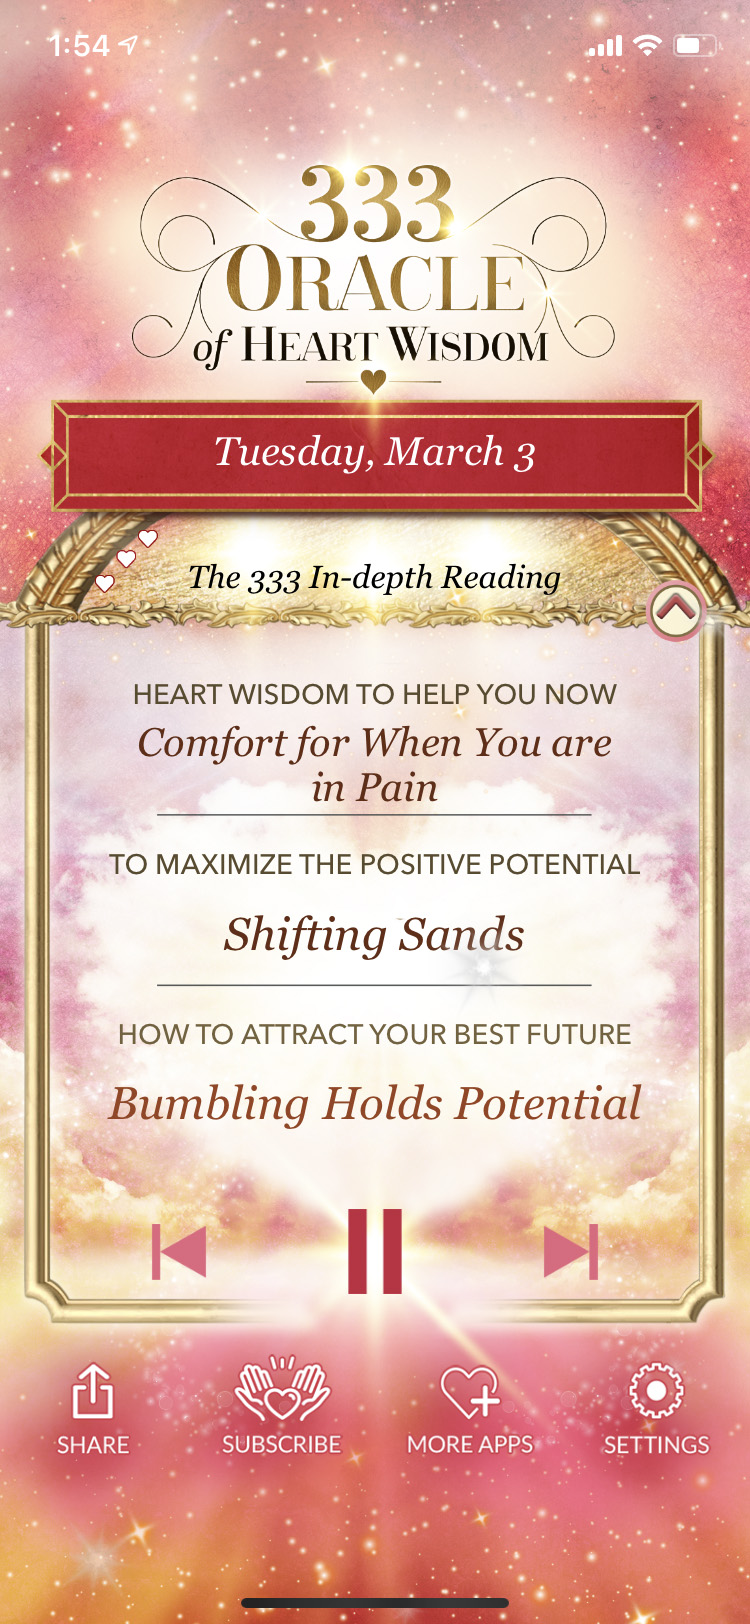 333 Oracle Of Heart Wisdom App by Alana Fairchild